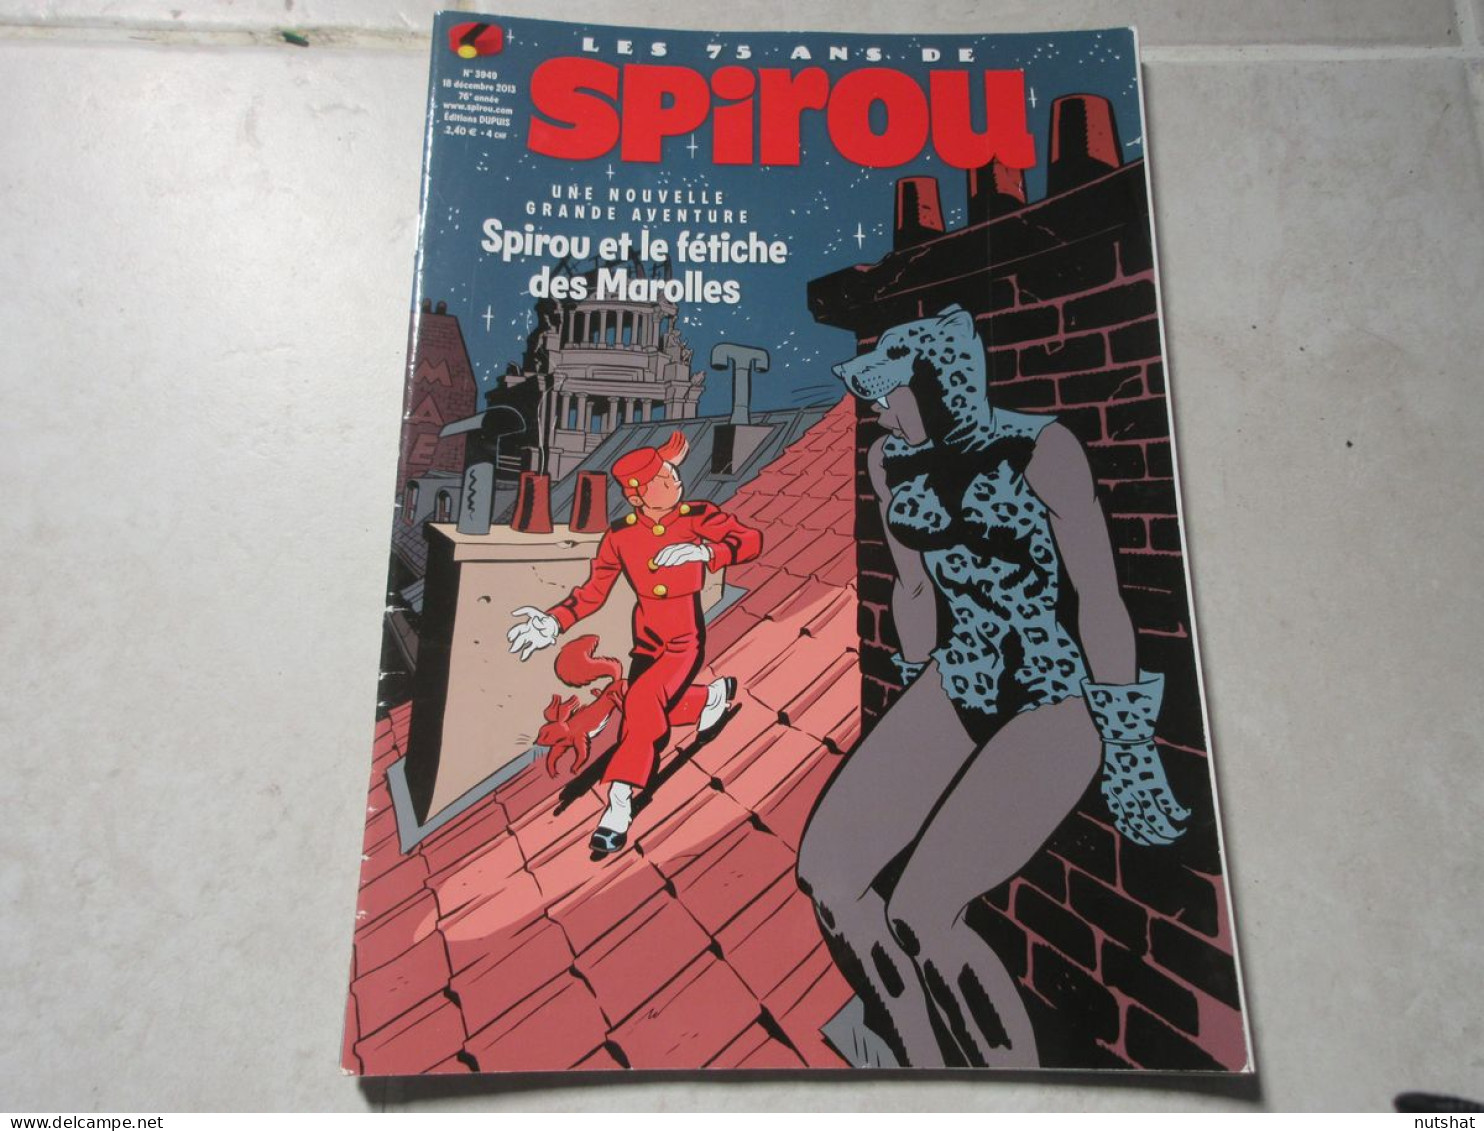 SPIROU 3949 18.12.2013 YANN SCHWARTZ SPIROU Et FANTASIO KERASCOET 1965 FOUFI     - Spirou Magazine